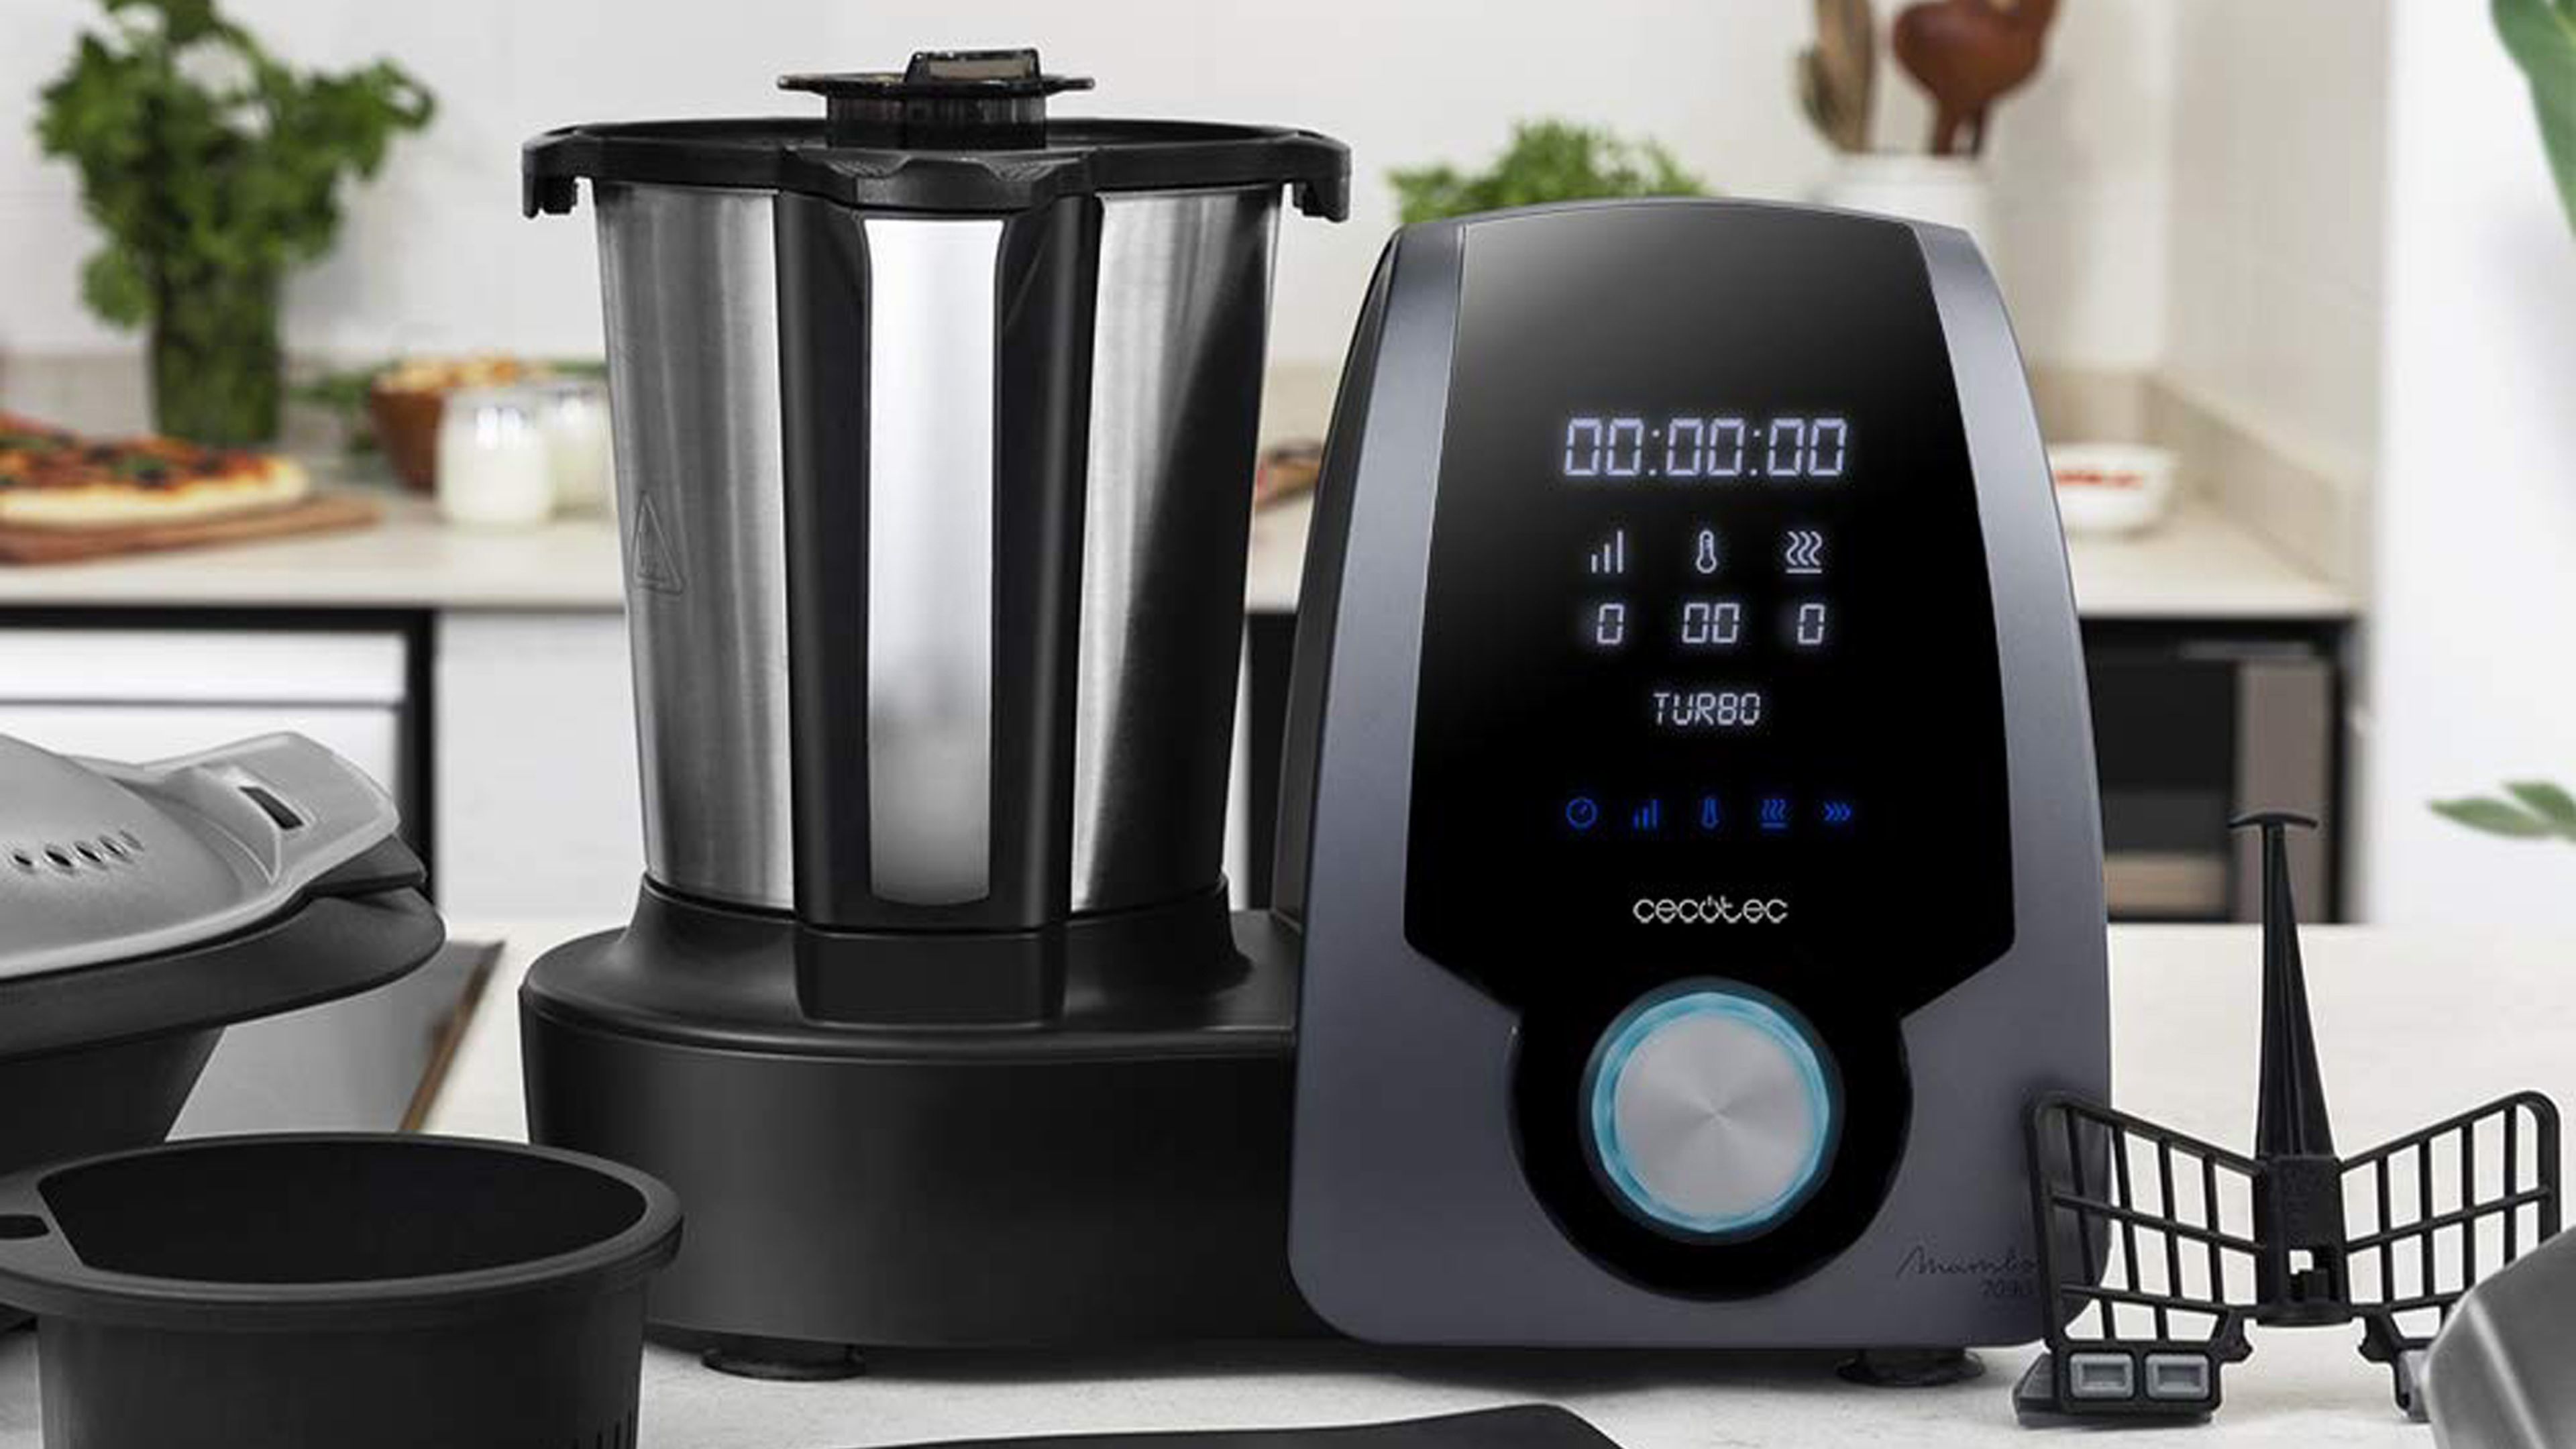 Oferta: robot de cocina Cecotec Mambo 7090 a 169 euros